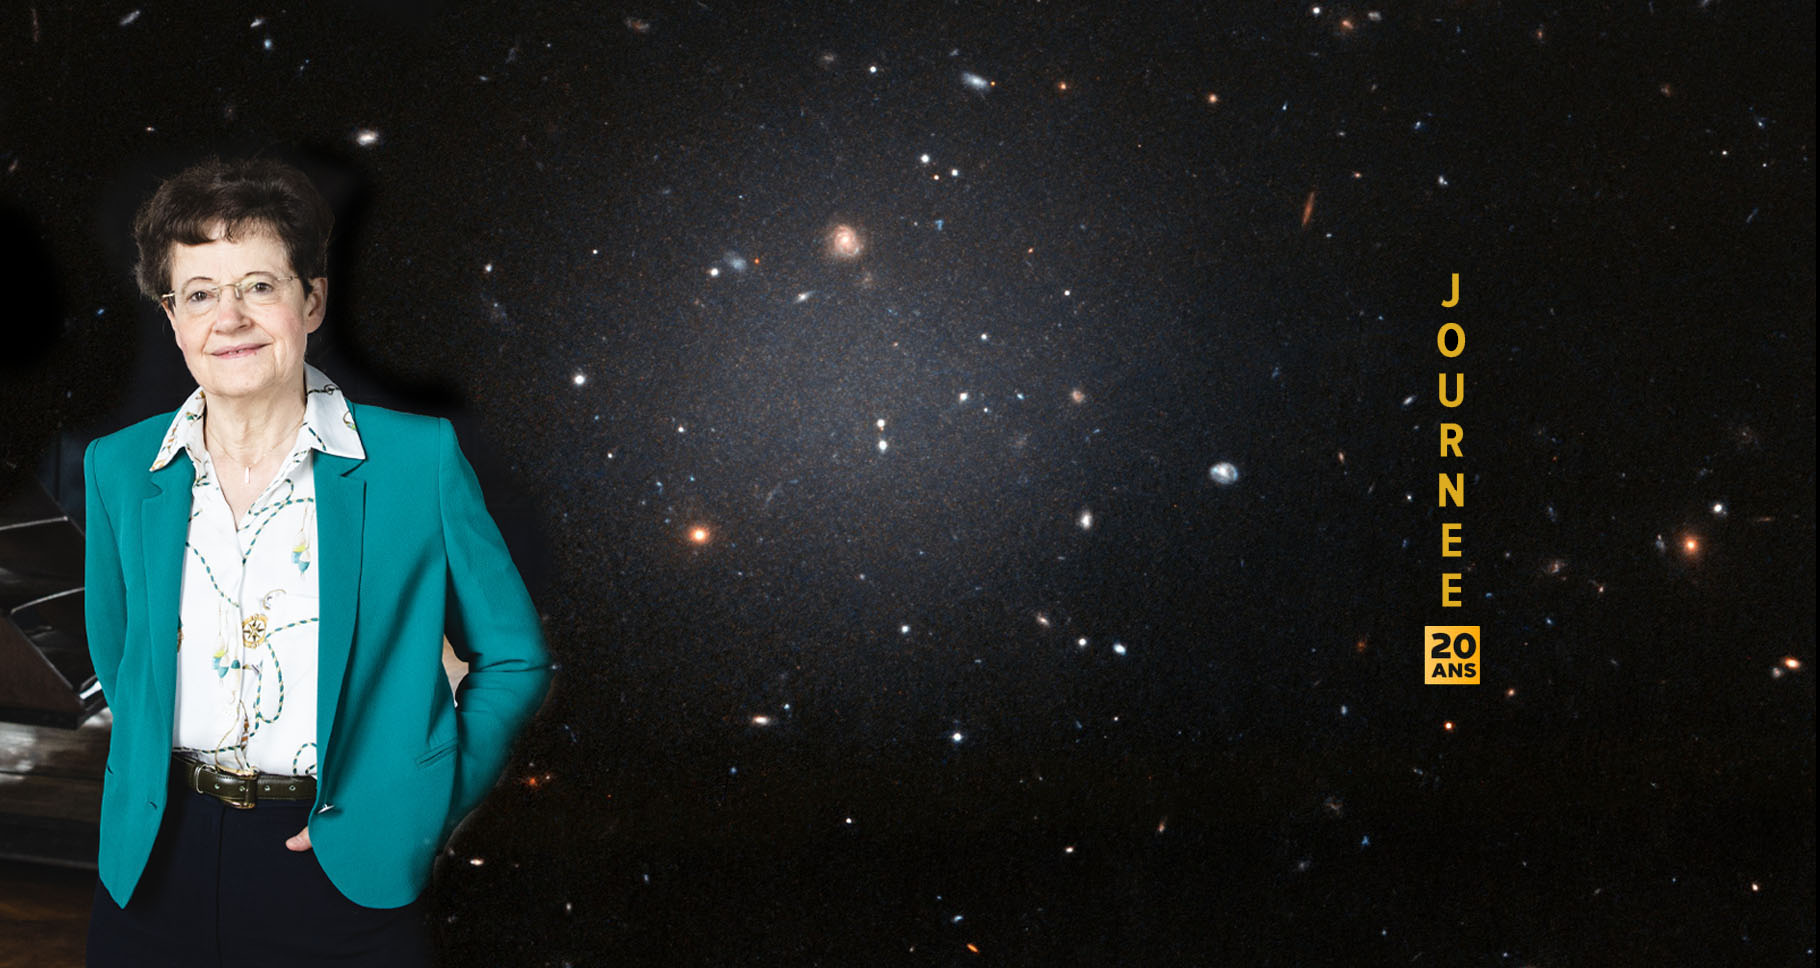 Sur ce montage photo on voit à droite de Françoise Combes la galaxie NGC 1052-DF2 qui réside dans le groupe dominé par une galaxie elliptique massive appelée NGC 1052. Cette grande galaxie à l'apparence floue est si diffuse que les astronomes peuvent voir clairement les galaxies lointaines derrière elle. Hubble a pris cette image le 16 novembre 2017 en utilisant son Advanced Camera for Surveys. © Nasa, ESA et P. van Dokkum (université de Yale)